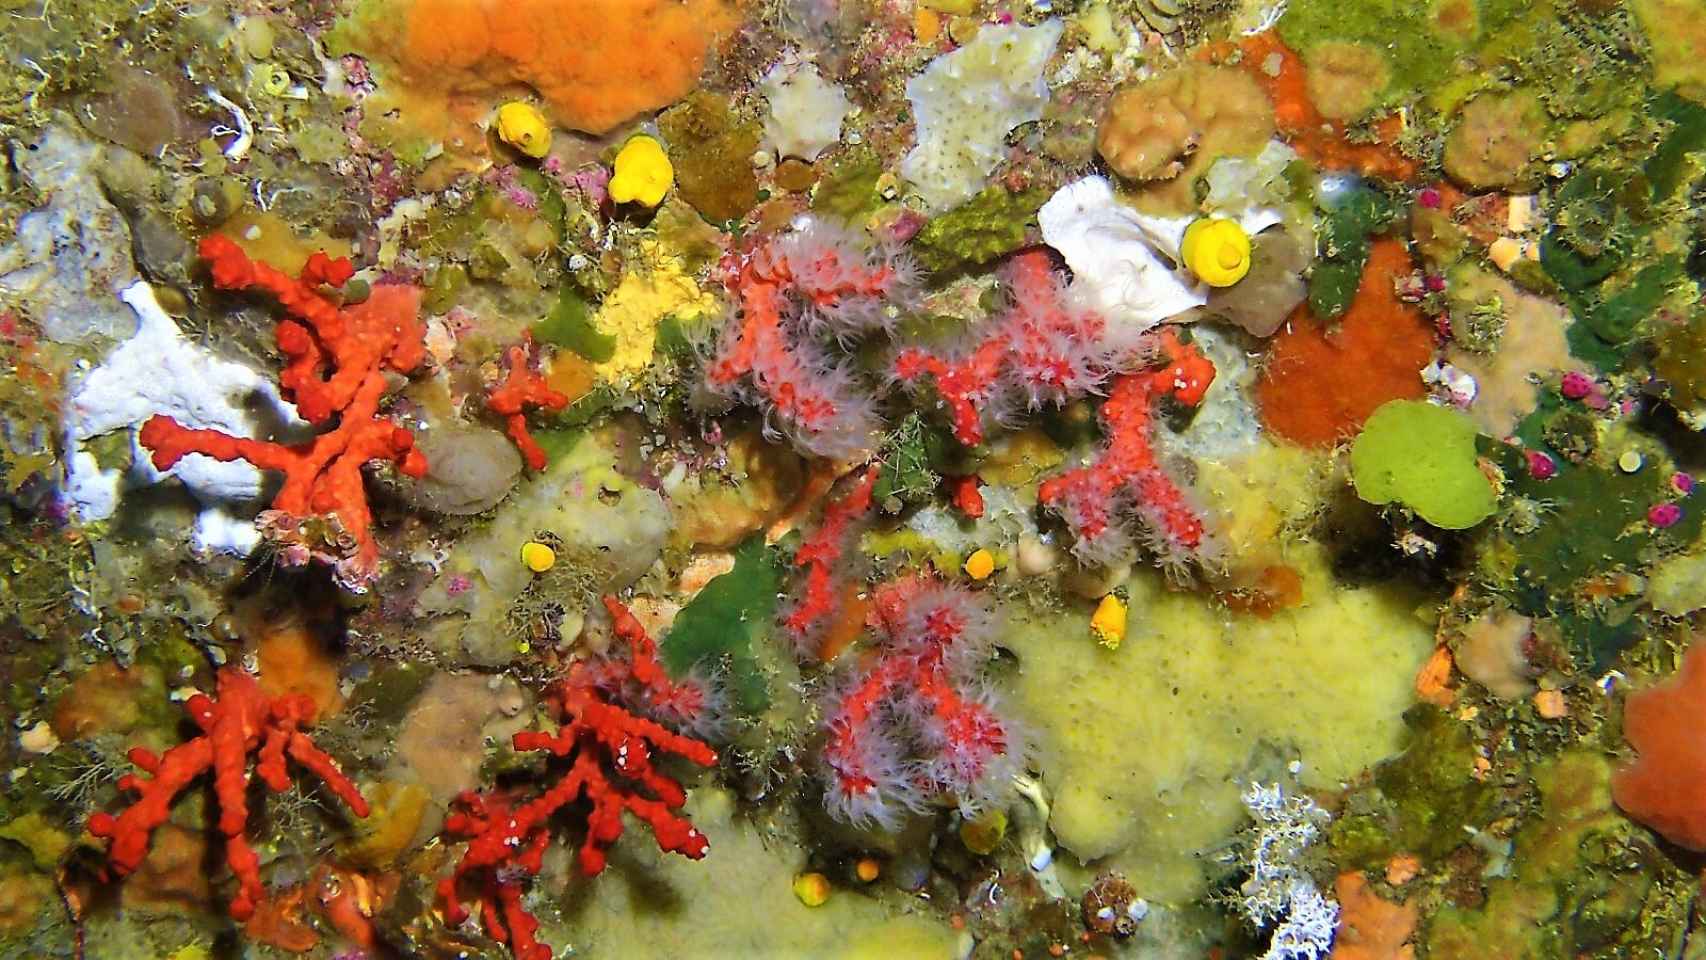 Coral rojo de las colonias jóvenes descubiertas en Perejil.